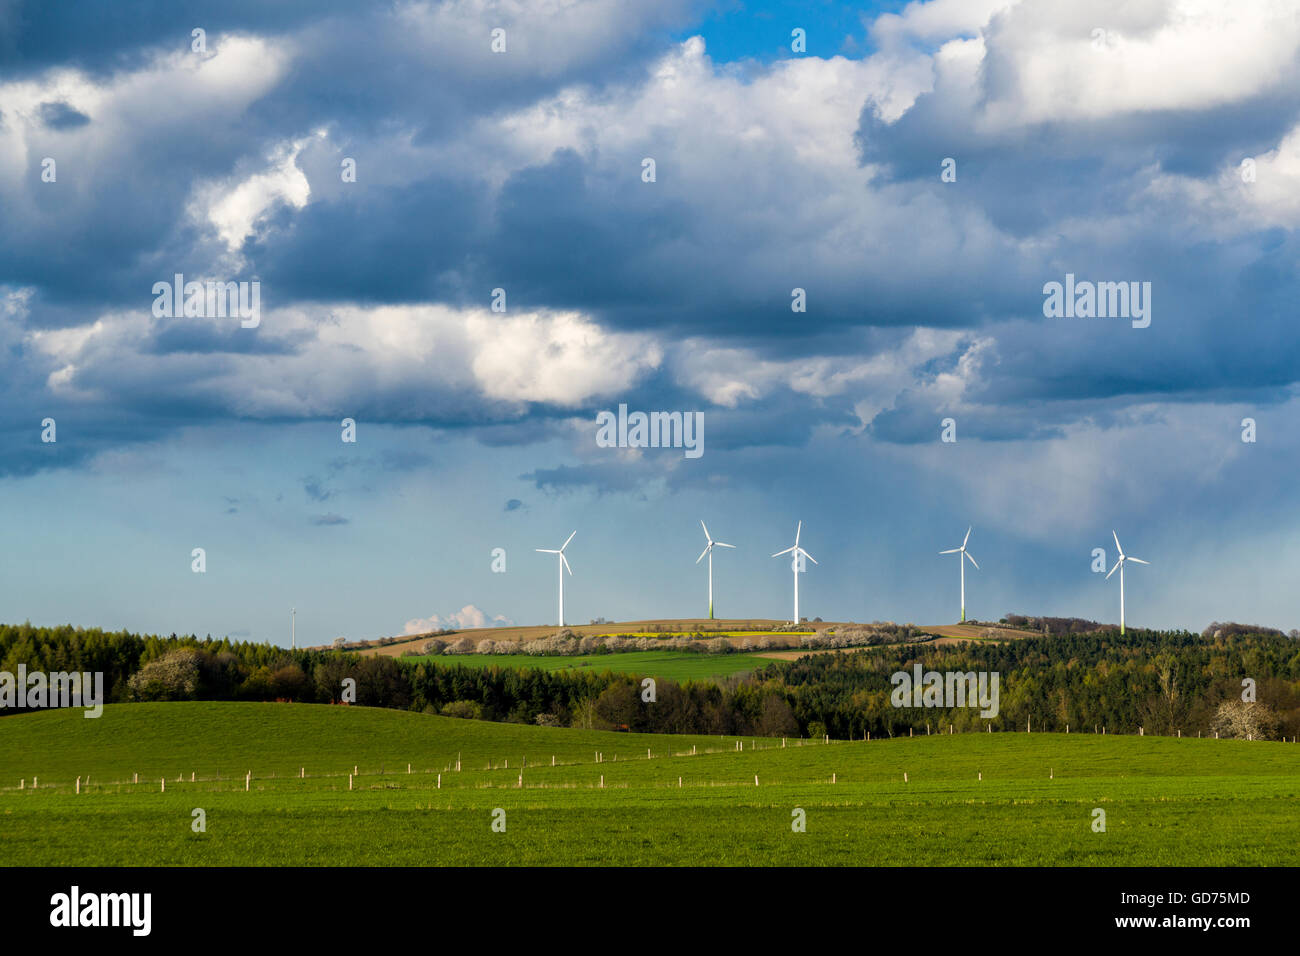 Il paesaggio agricolo con impianti di energia eolica, alberi verdi campi e nuvoloso cielo blu, Hausdorf, Bassa Sassonia, Germania Foto Stock